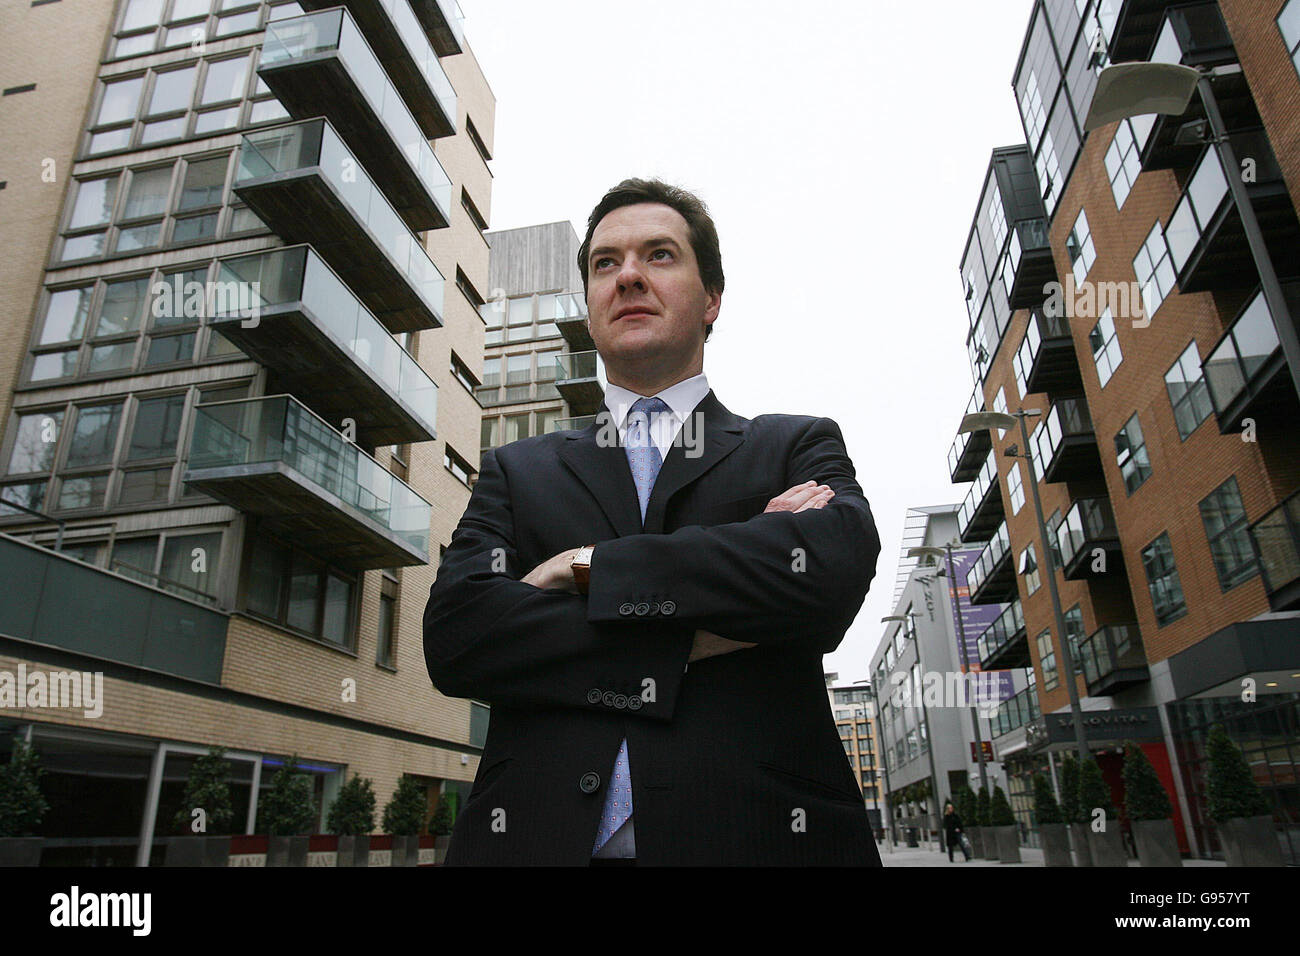 Großbritanniens Schattenkanzler George Osborne vor dem Irish Financial Services Centre, im Zentrum von Dublin, Donnerstag, 23. Februar 2006. Osborne war in Dublin, um einen Vortrag an der Smurfit Business School zu halten. Schattenkanzler George Osborne wird heute sagen, Gordon Browns Wirtschaftspolitik sei "mit der Vergangenheit verbunden" und ein Hindernis für Großbritannien, die Herausforderungen des 21. Jahrhunderts zu bewältigen und "eine ständig steigende Steuerbelastung, Und ein ständig wachsender Wohlfahrtsstaat wird Großbritannien nicht ausrüsten, um mit aufstrebenden Wirtschaftsriesen wie China und Indien zu konkurrieren. Siehe PA Geschichte POLITIK Osborne. DRÜCKEN Sie VERBANDSFOTO. Stockfoto